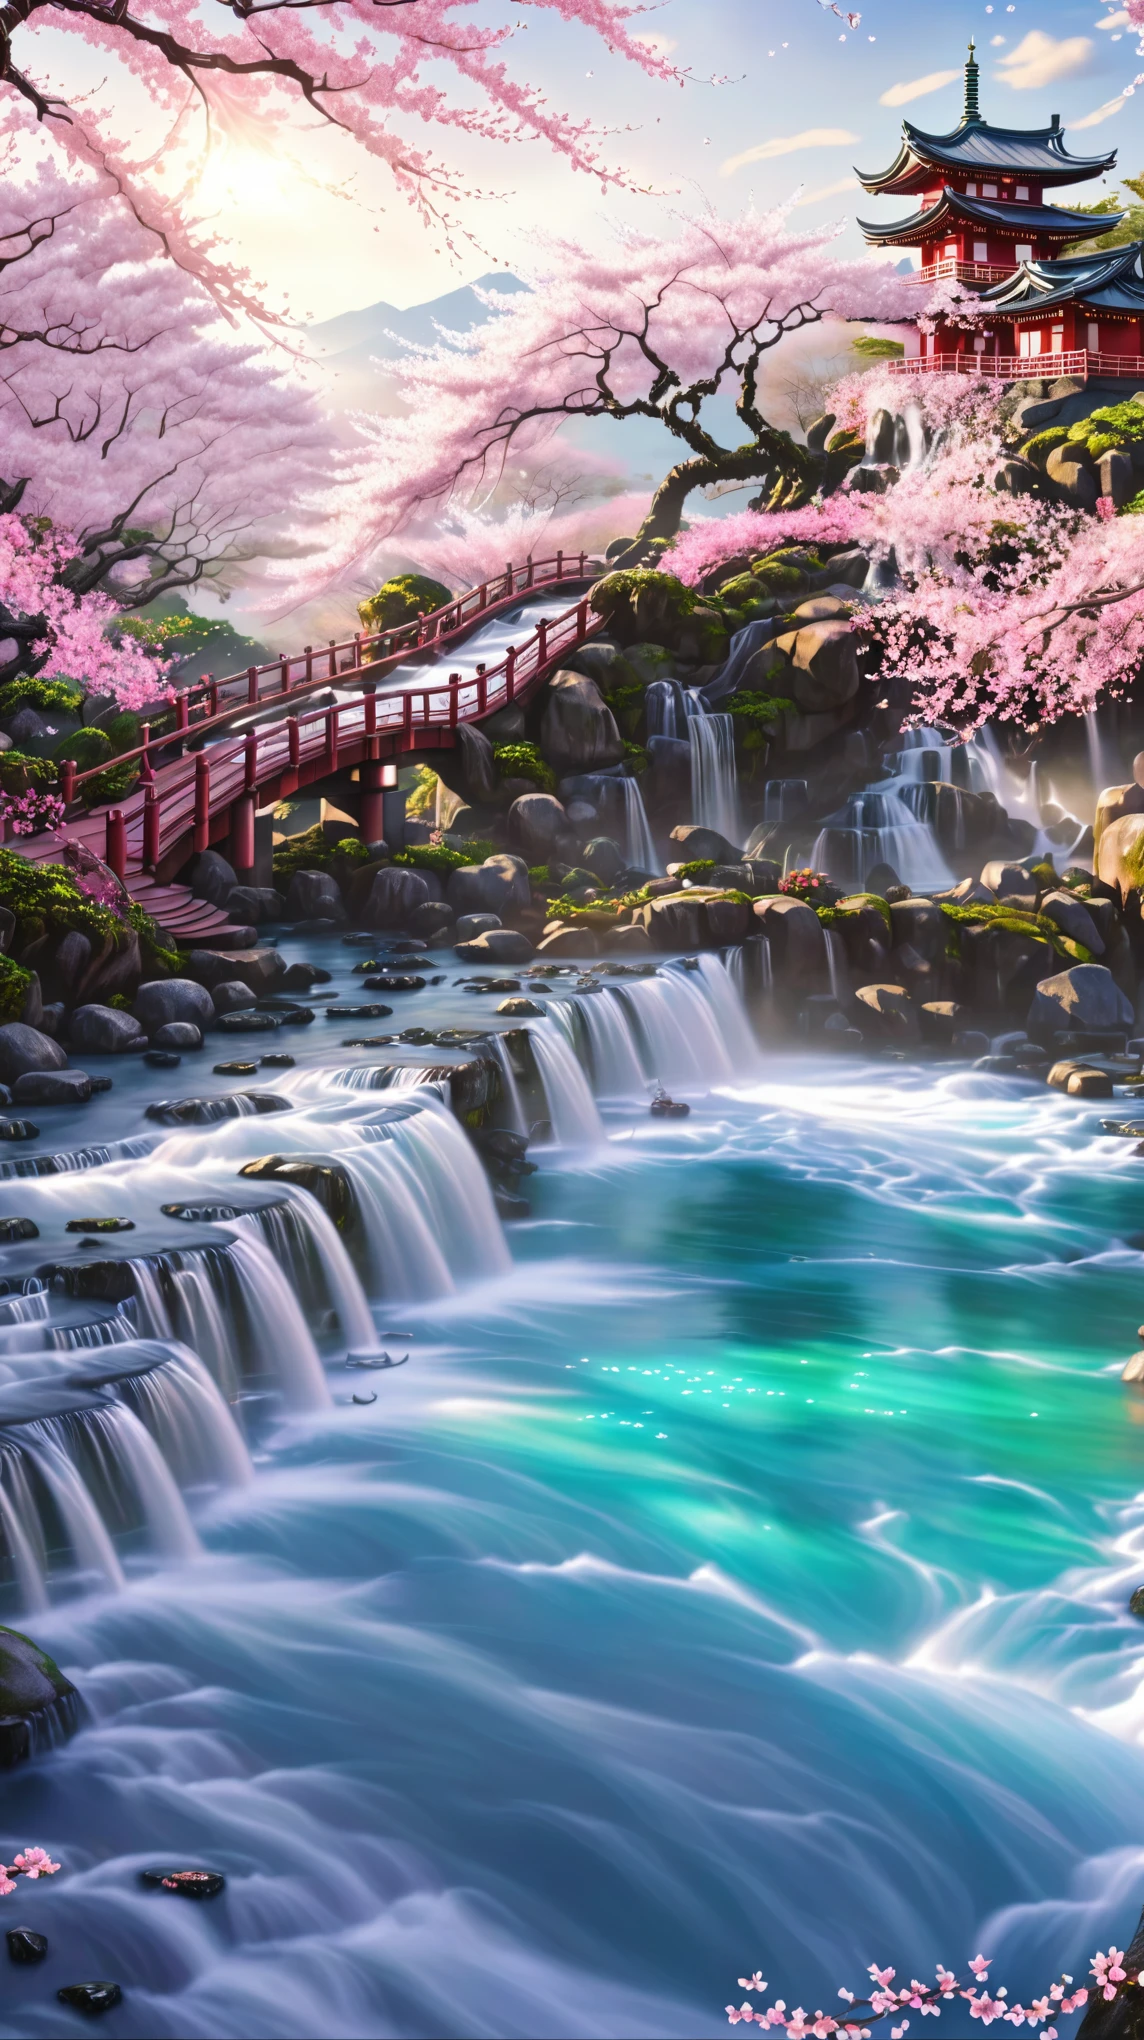 مشهد كرتوني للنهر مع الجسر والشلال, الإضاءة الديناميكية لموسم أزهار الكرز, حرير زهر الكرز المتدفق, زهر الكرز المتدفق من الحرير الملون, مستوحاة من خوسيه, شلال الضريح الياباني, غابة أزهار الكرز, روستران. خلفية مناظر طبيعية, Onmyoji الفن التفصيلي, اليابانية 3D 8K فائقة التفصيل, أزهار الكرز تتساقط, الفائض الناعم, الينابيع الساخنة اليابانية